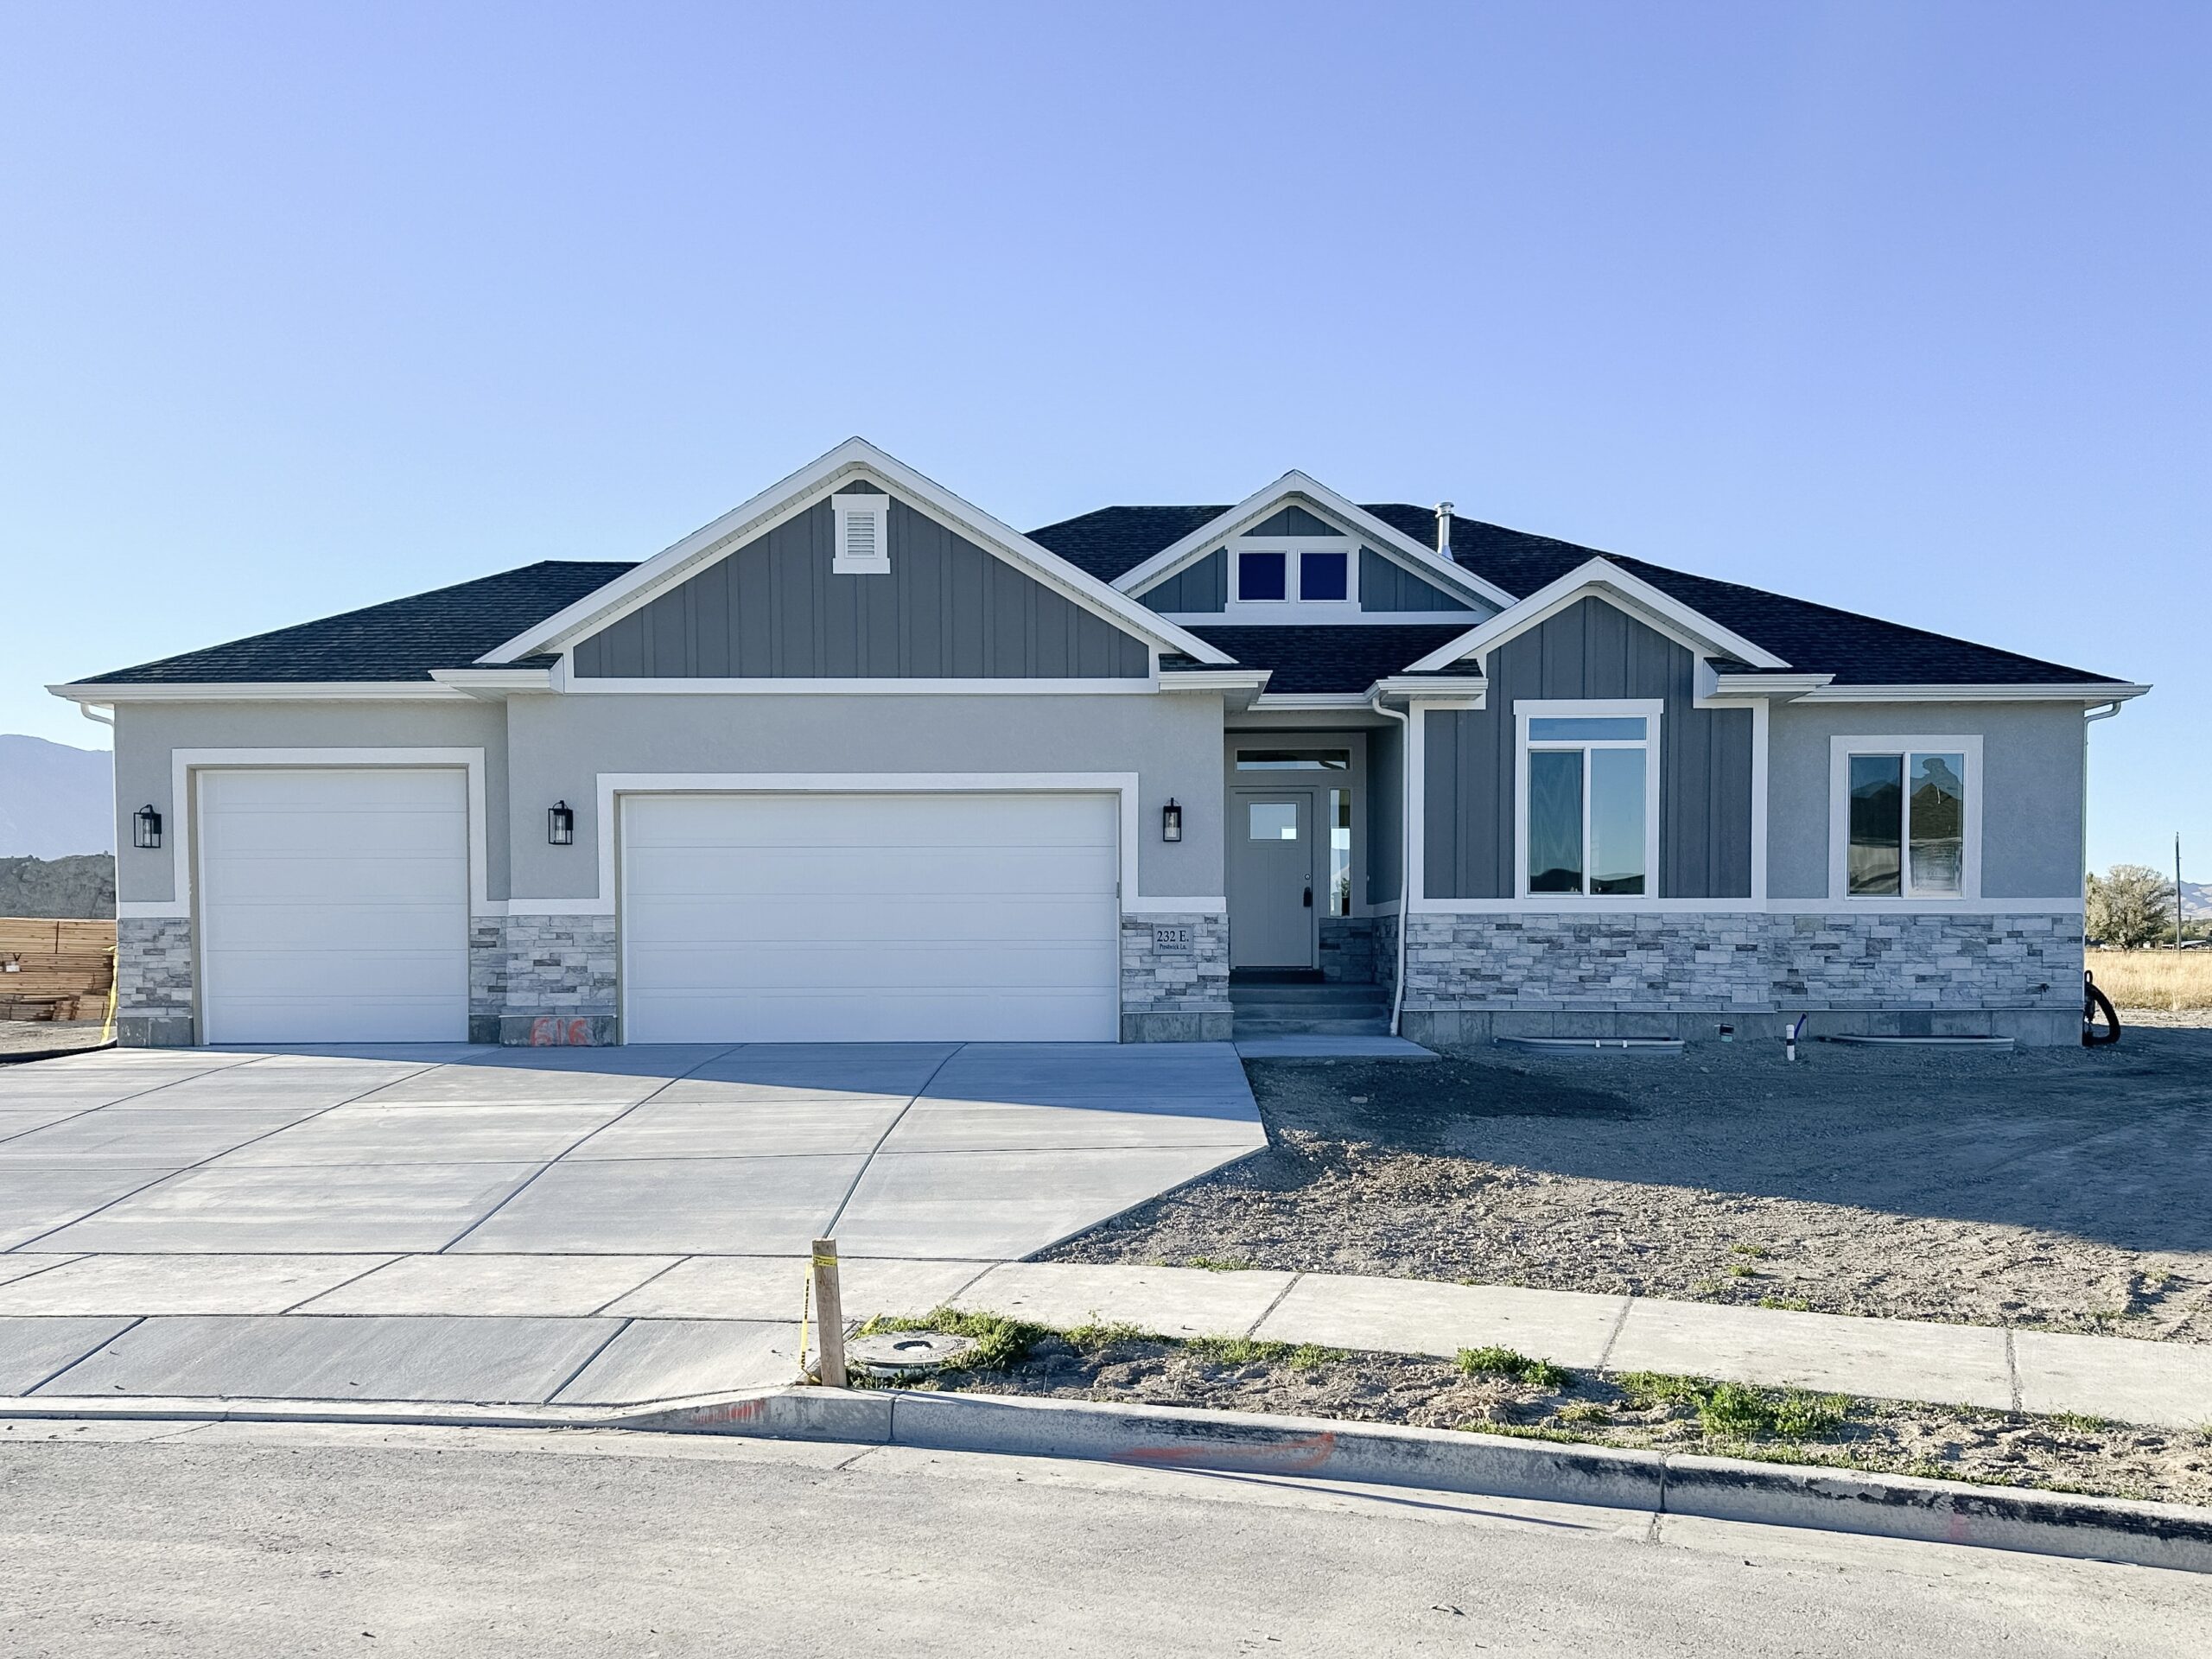 Home Builders In Utah Perry Homes